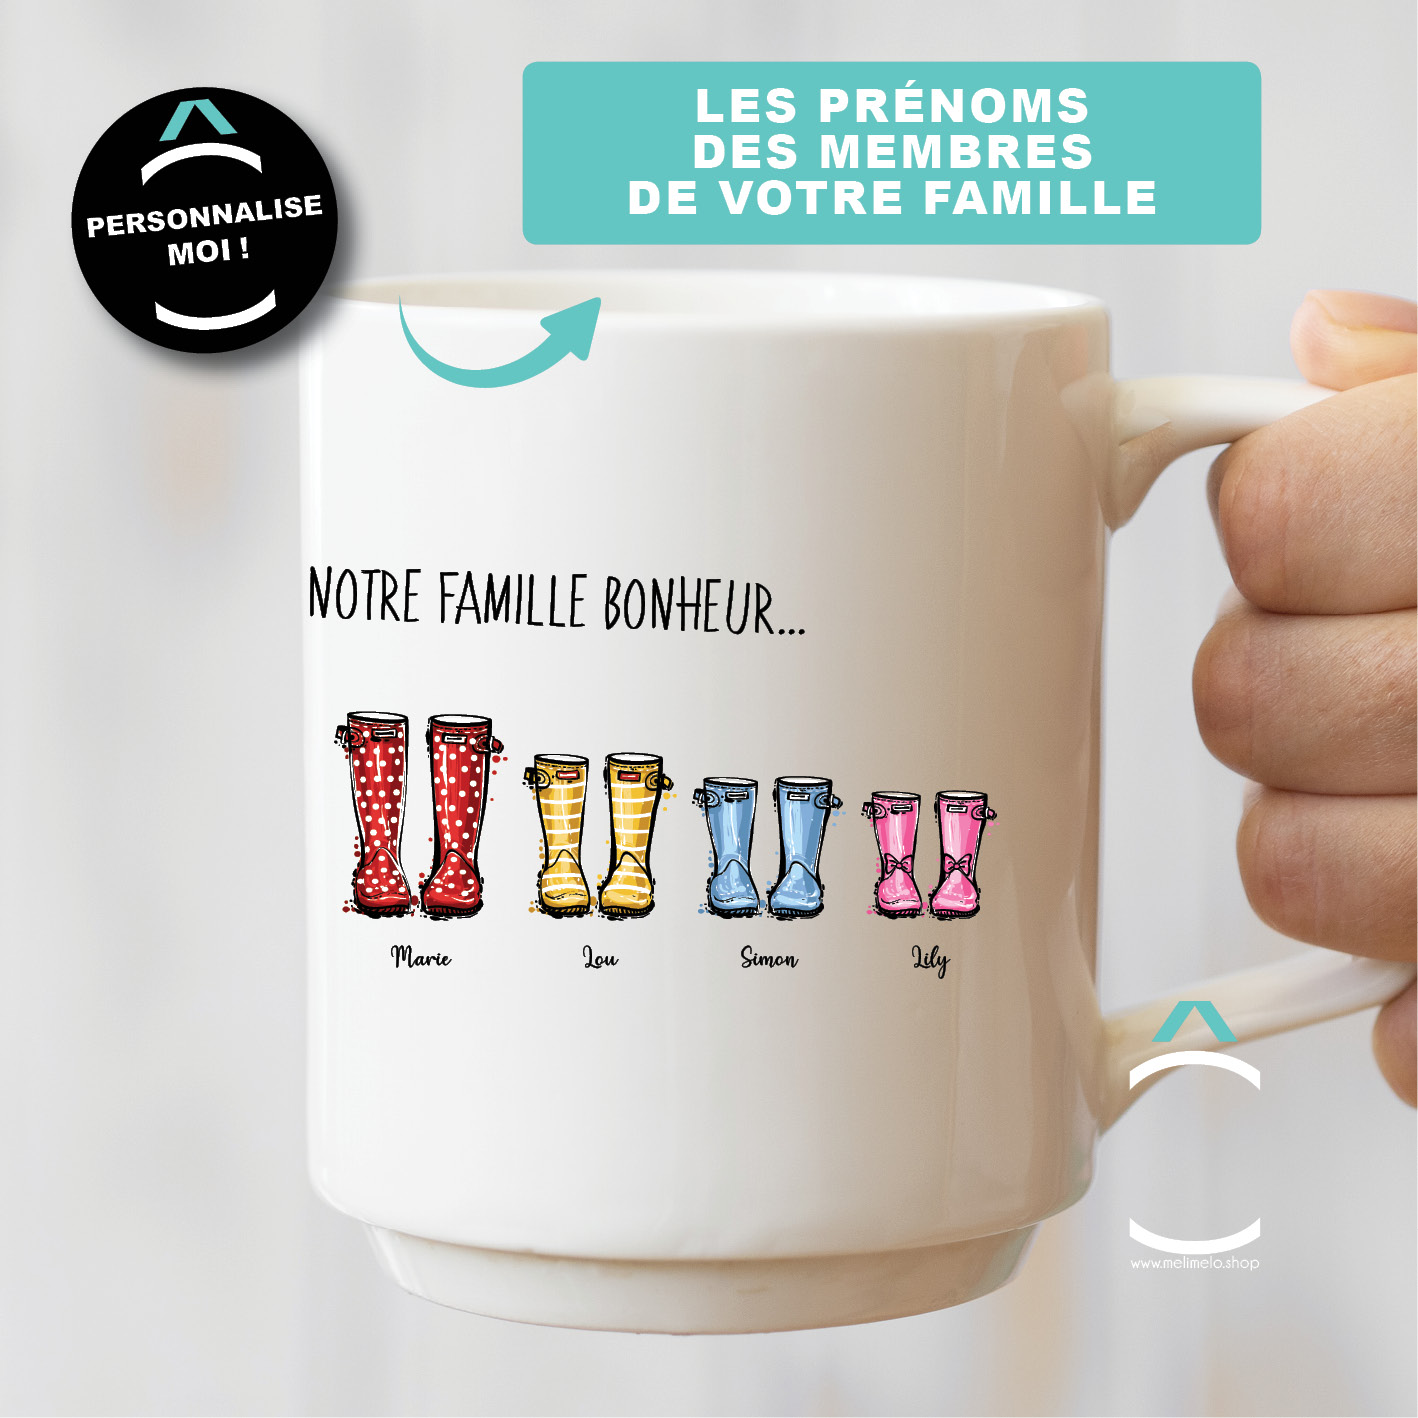 Mug Personnalisé - Bonheur En Famille (Chat) - TESCADEAUX